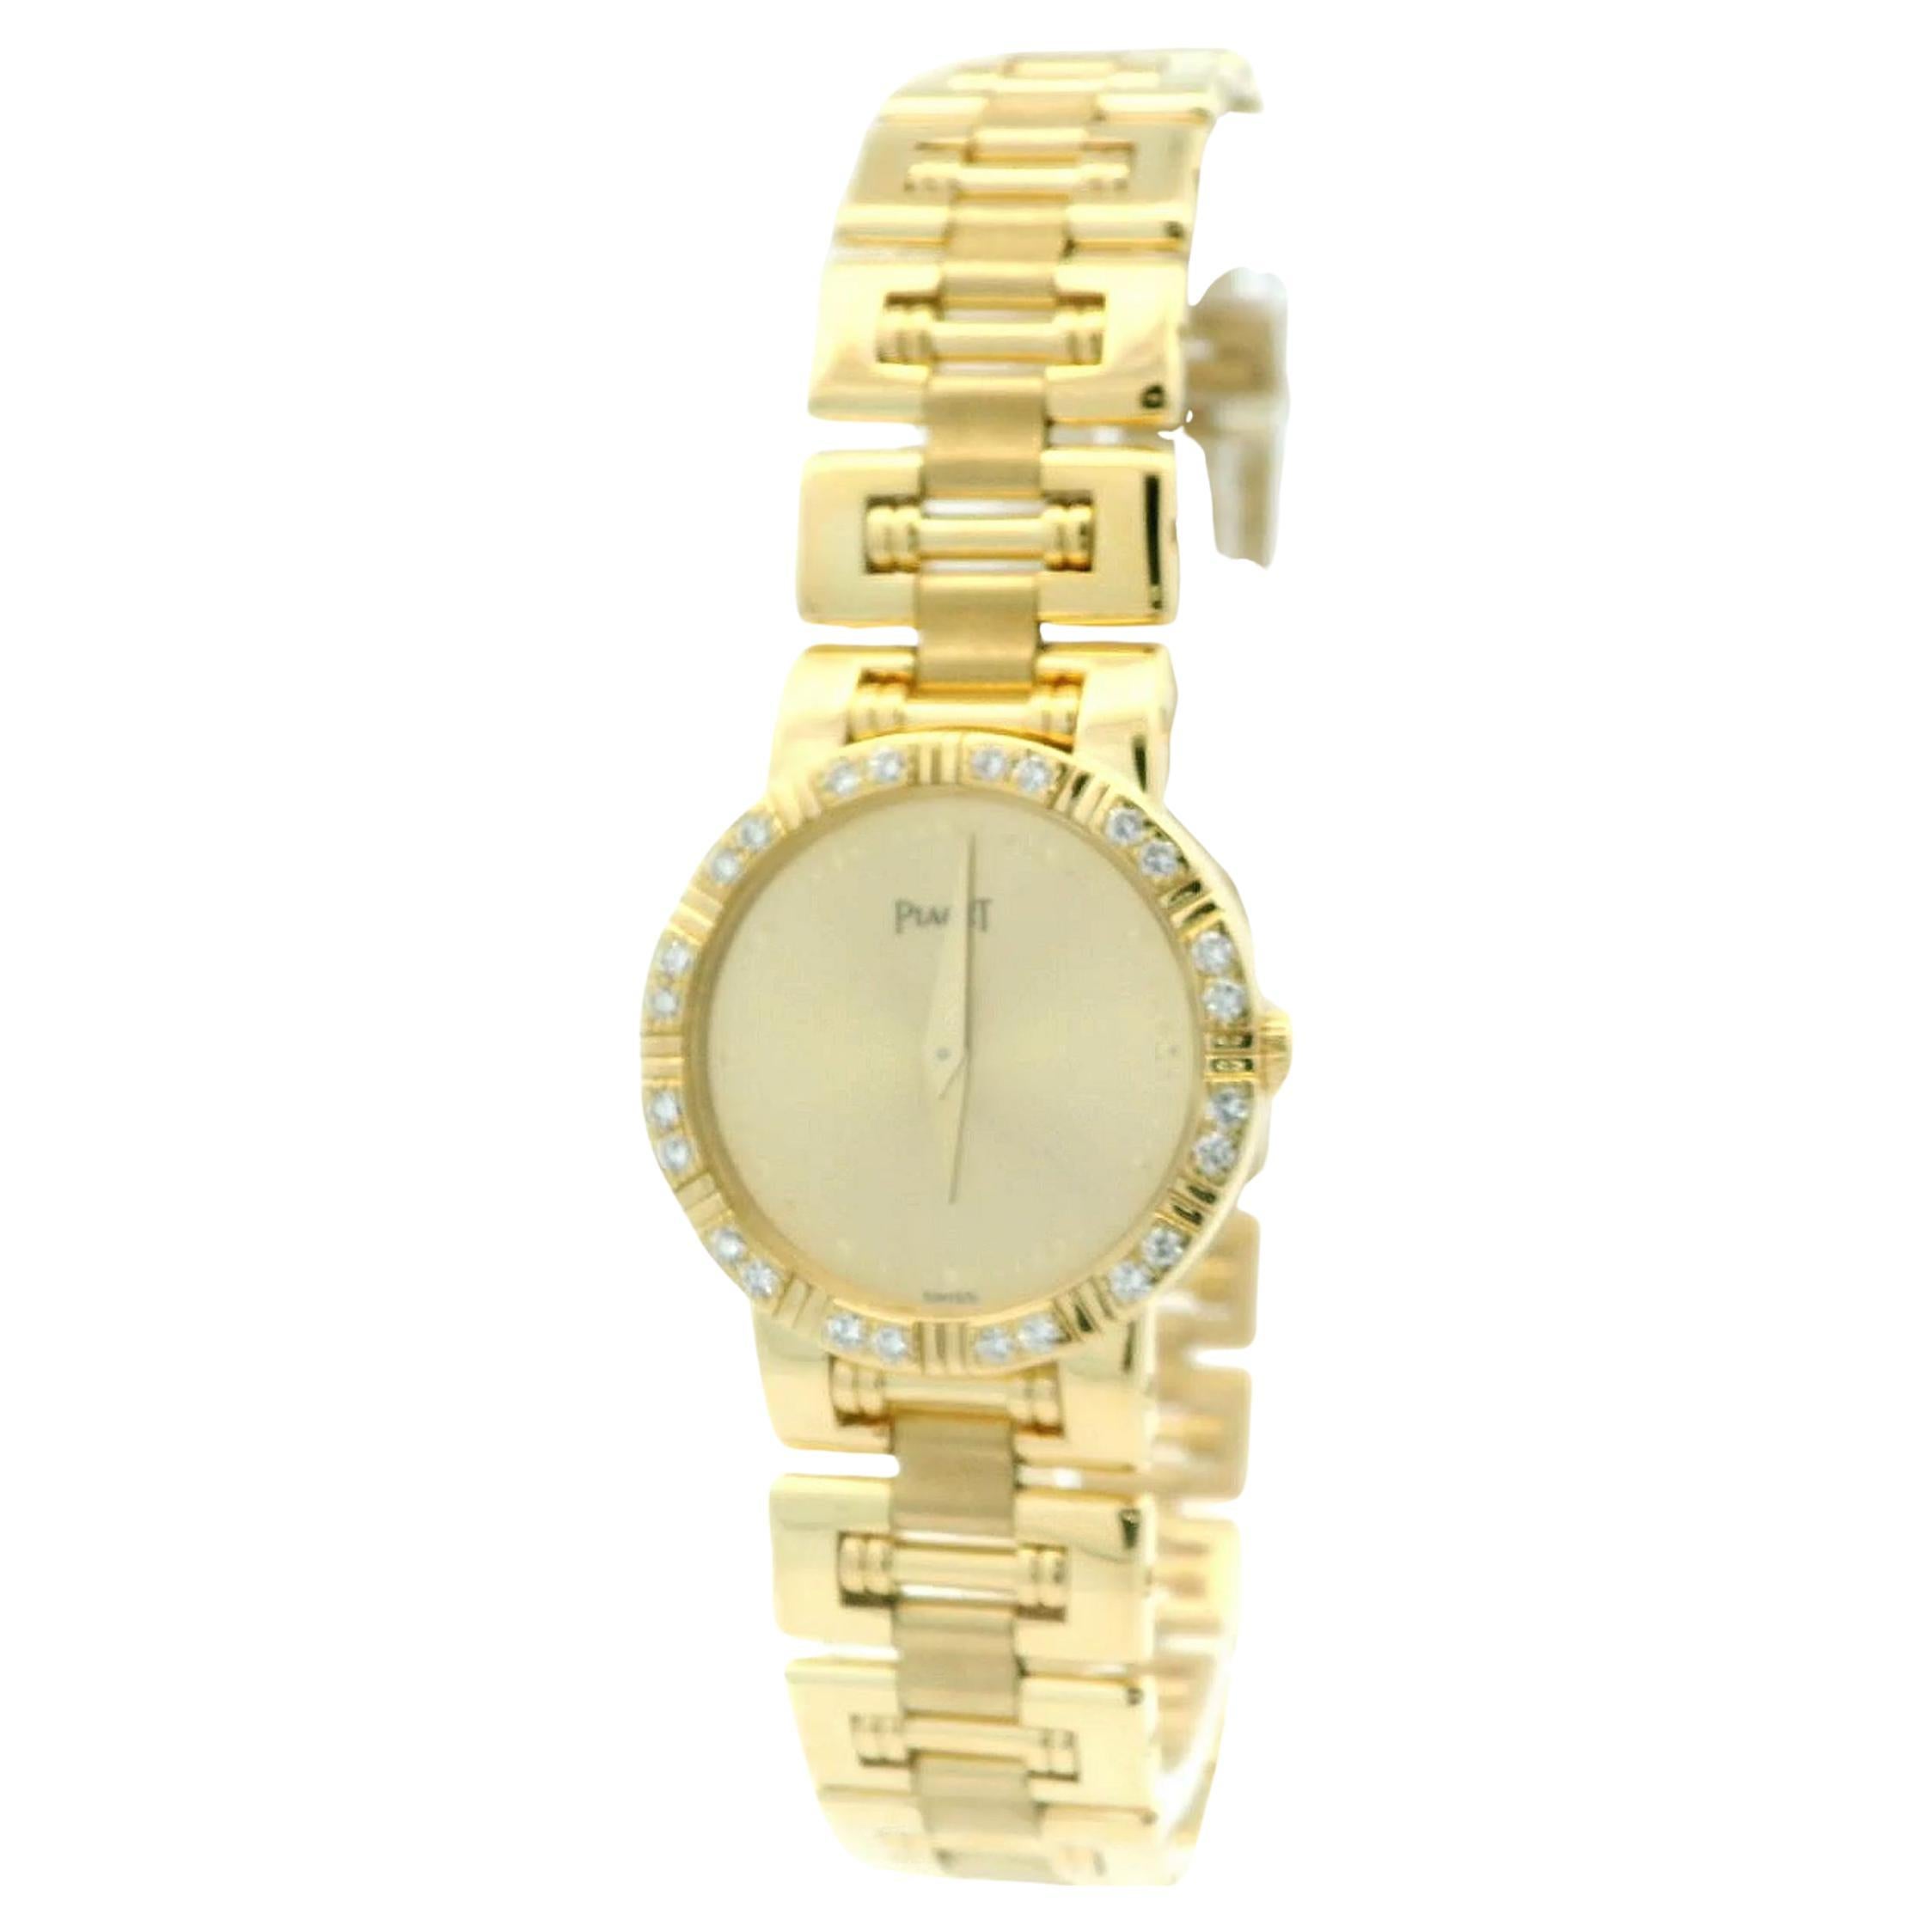 Ce magnifique garde-temps pour dames Piaget Dancer est proposé par AleXS. La montre est fabriquée en or jaune 18 carats rayonnant pour une déclaration luxueuse. Parée d'une lunette ornée d'un poids total de 0,23 ct de diamants qui brillent d'un